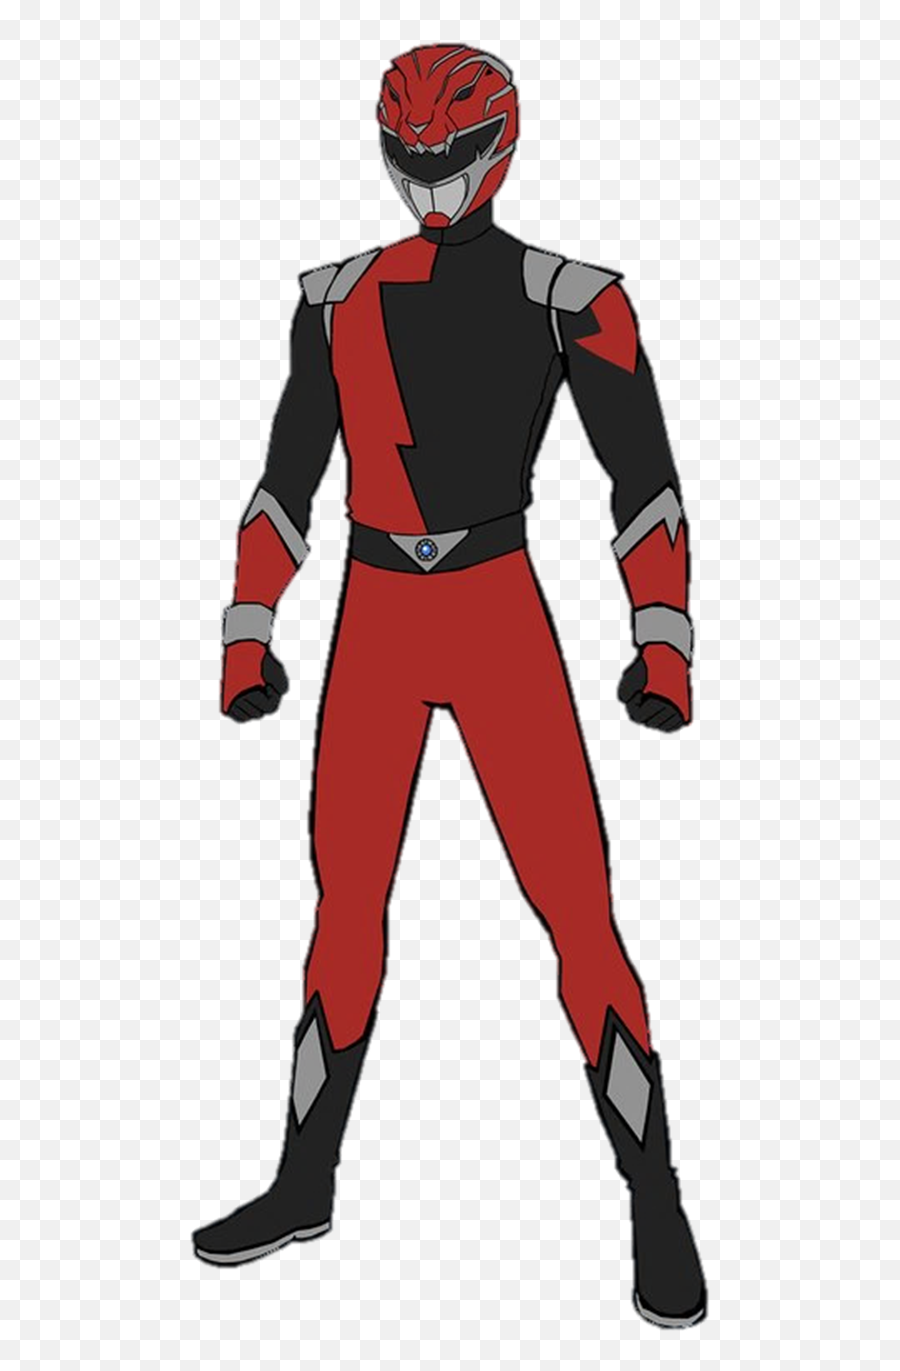 Power Rangers Hyper Force Red Ranger - Power Rangers Hyperforce Red Png,Red Power Ranger Png